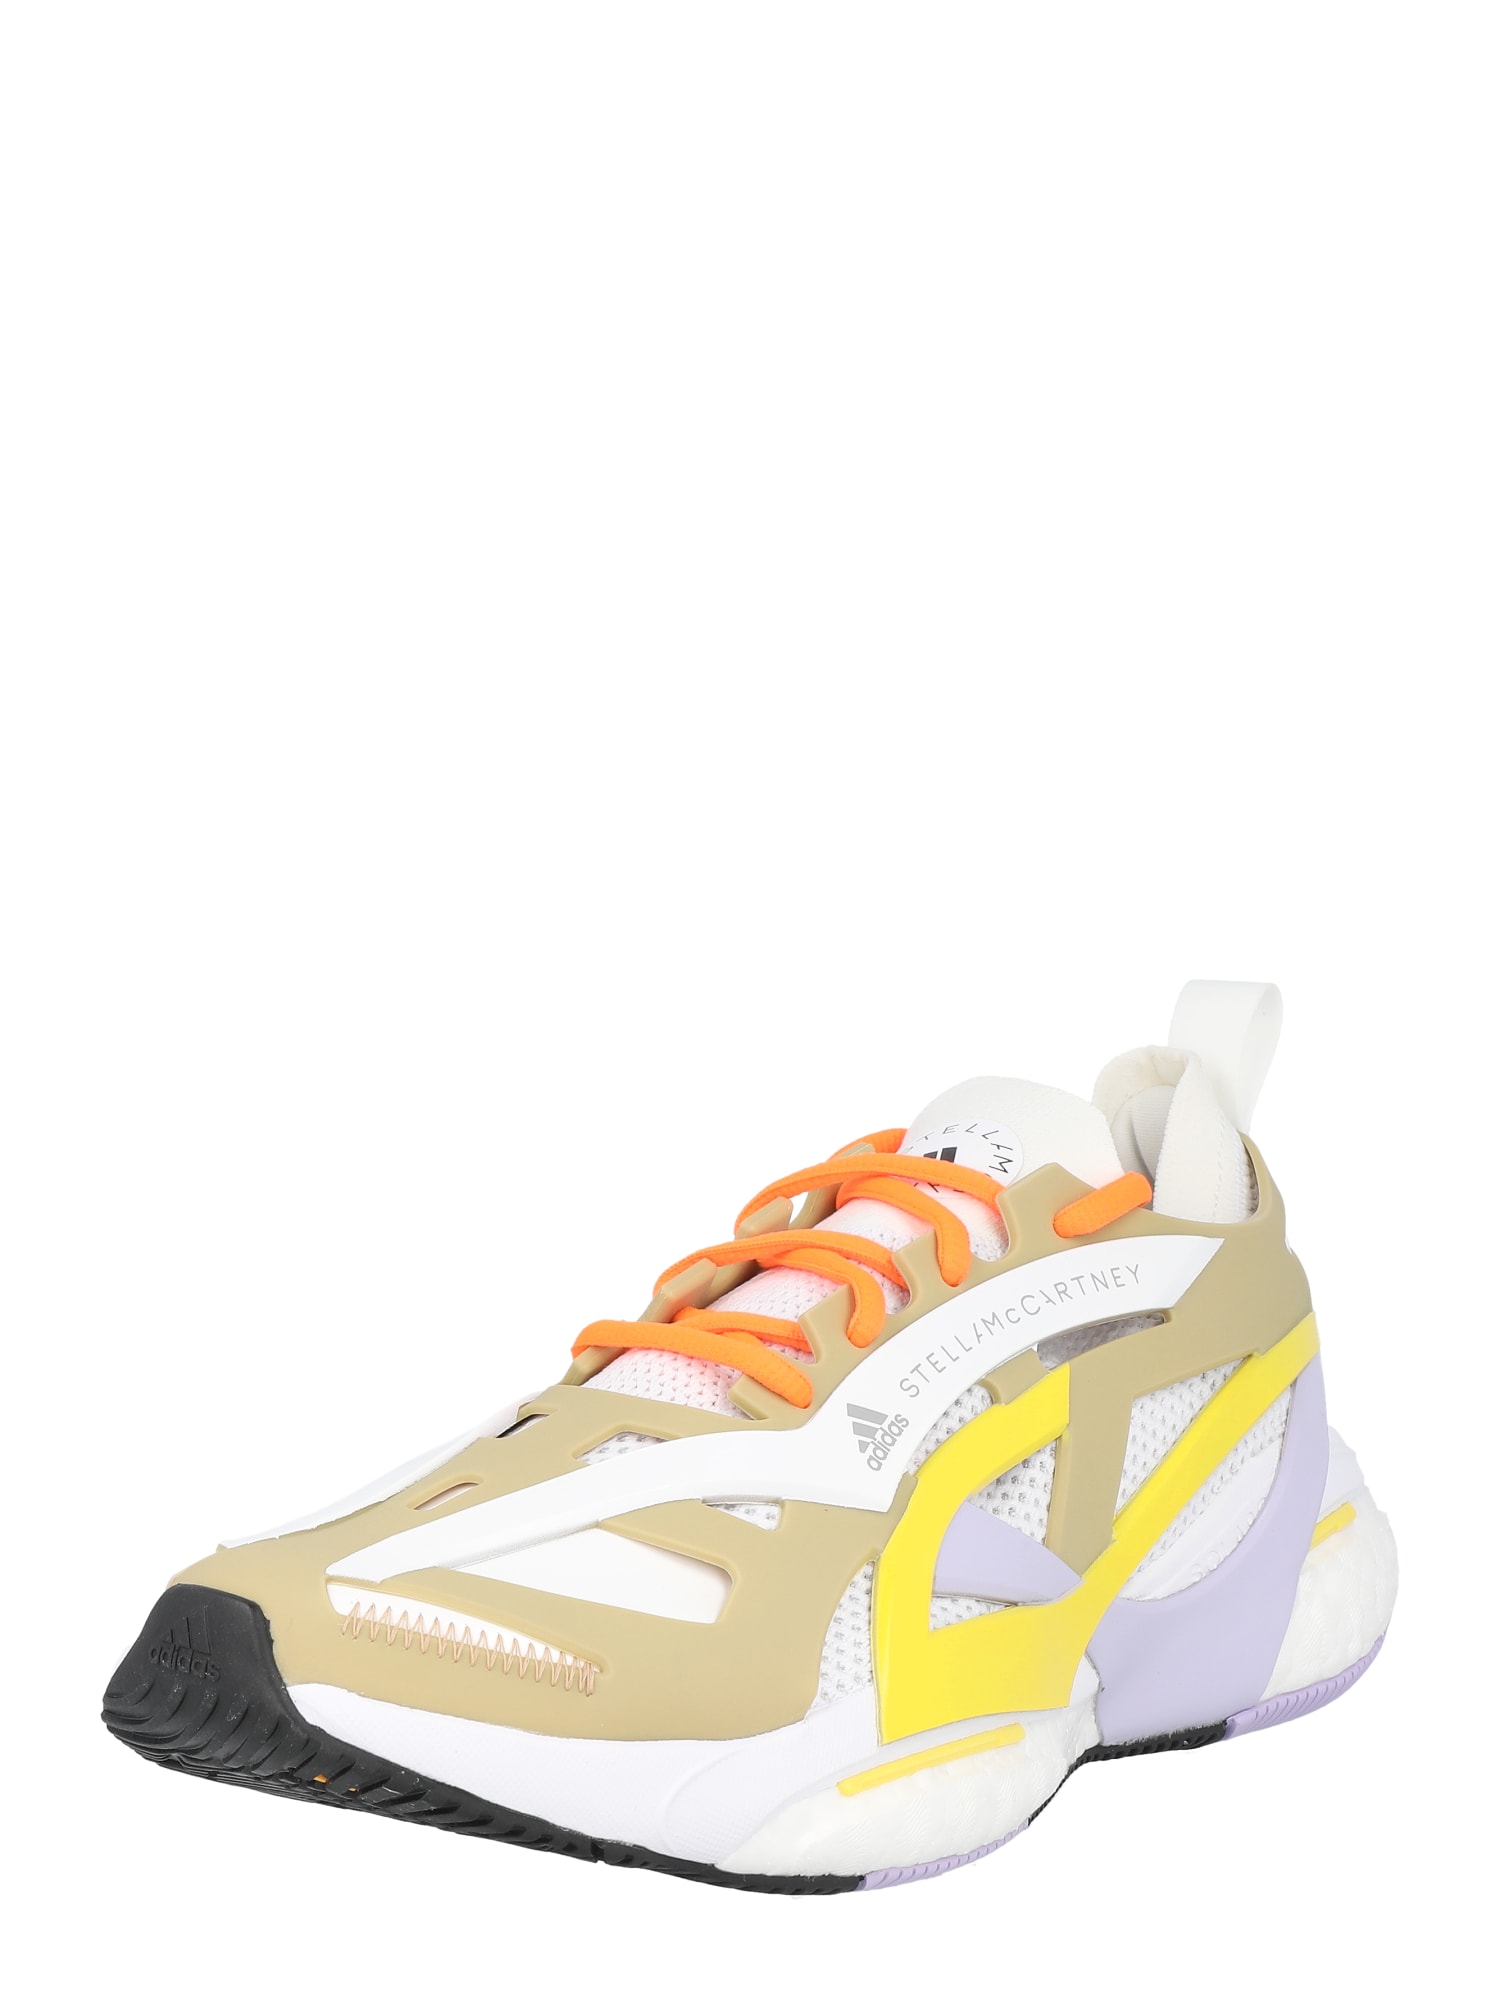 ADIDAS BY STELLA MCCARTNEY Bėgimo batai 'SOLARGLIDE' ruda / geltona / purpurinė / balta